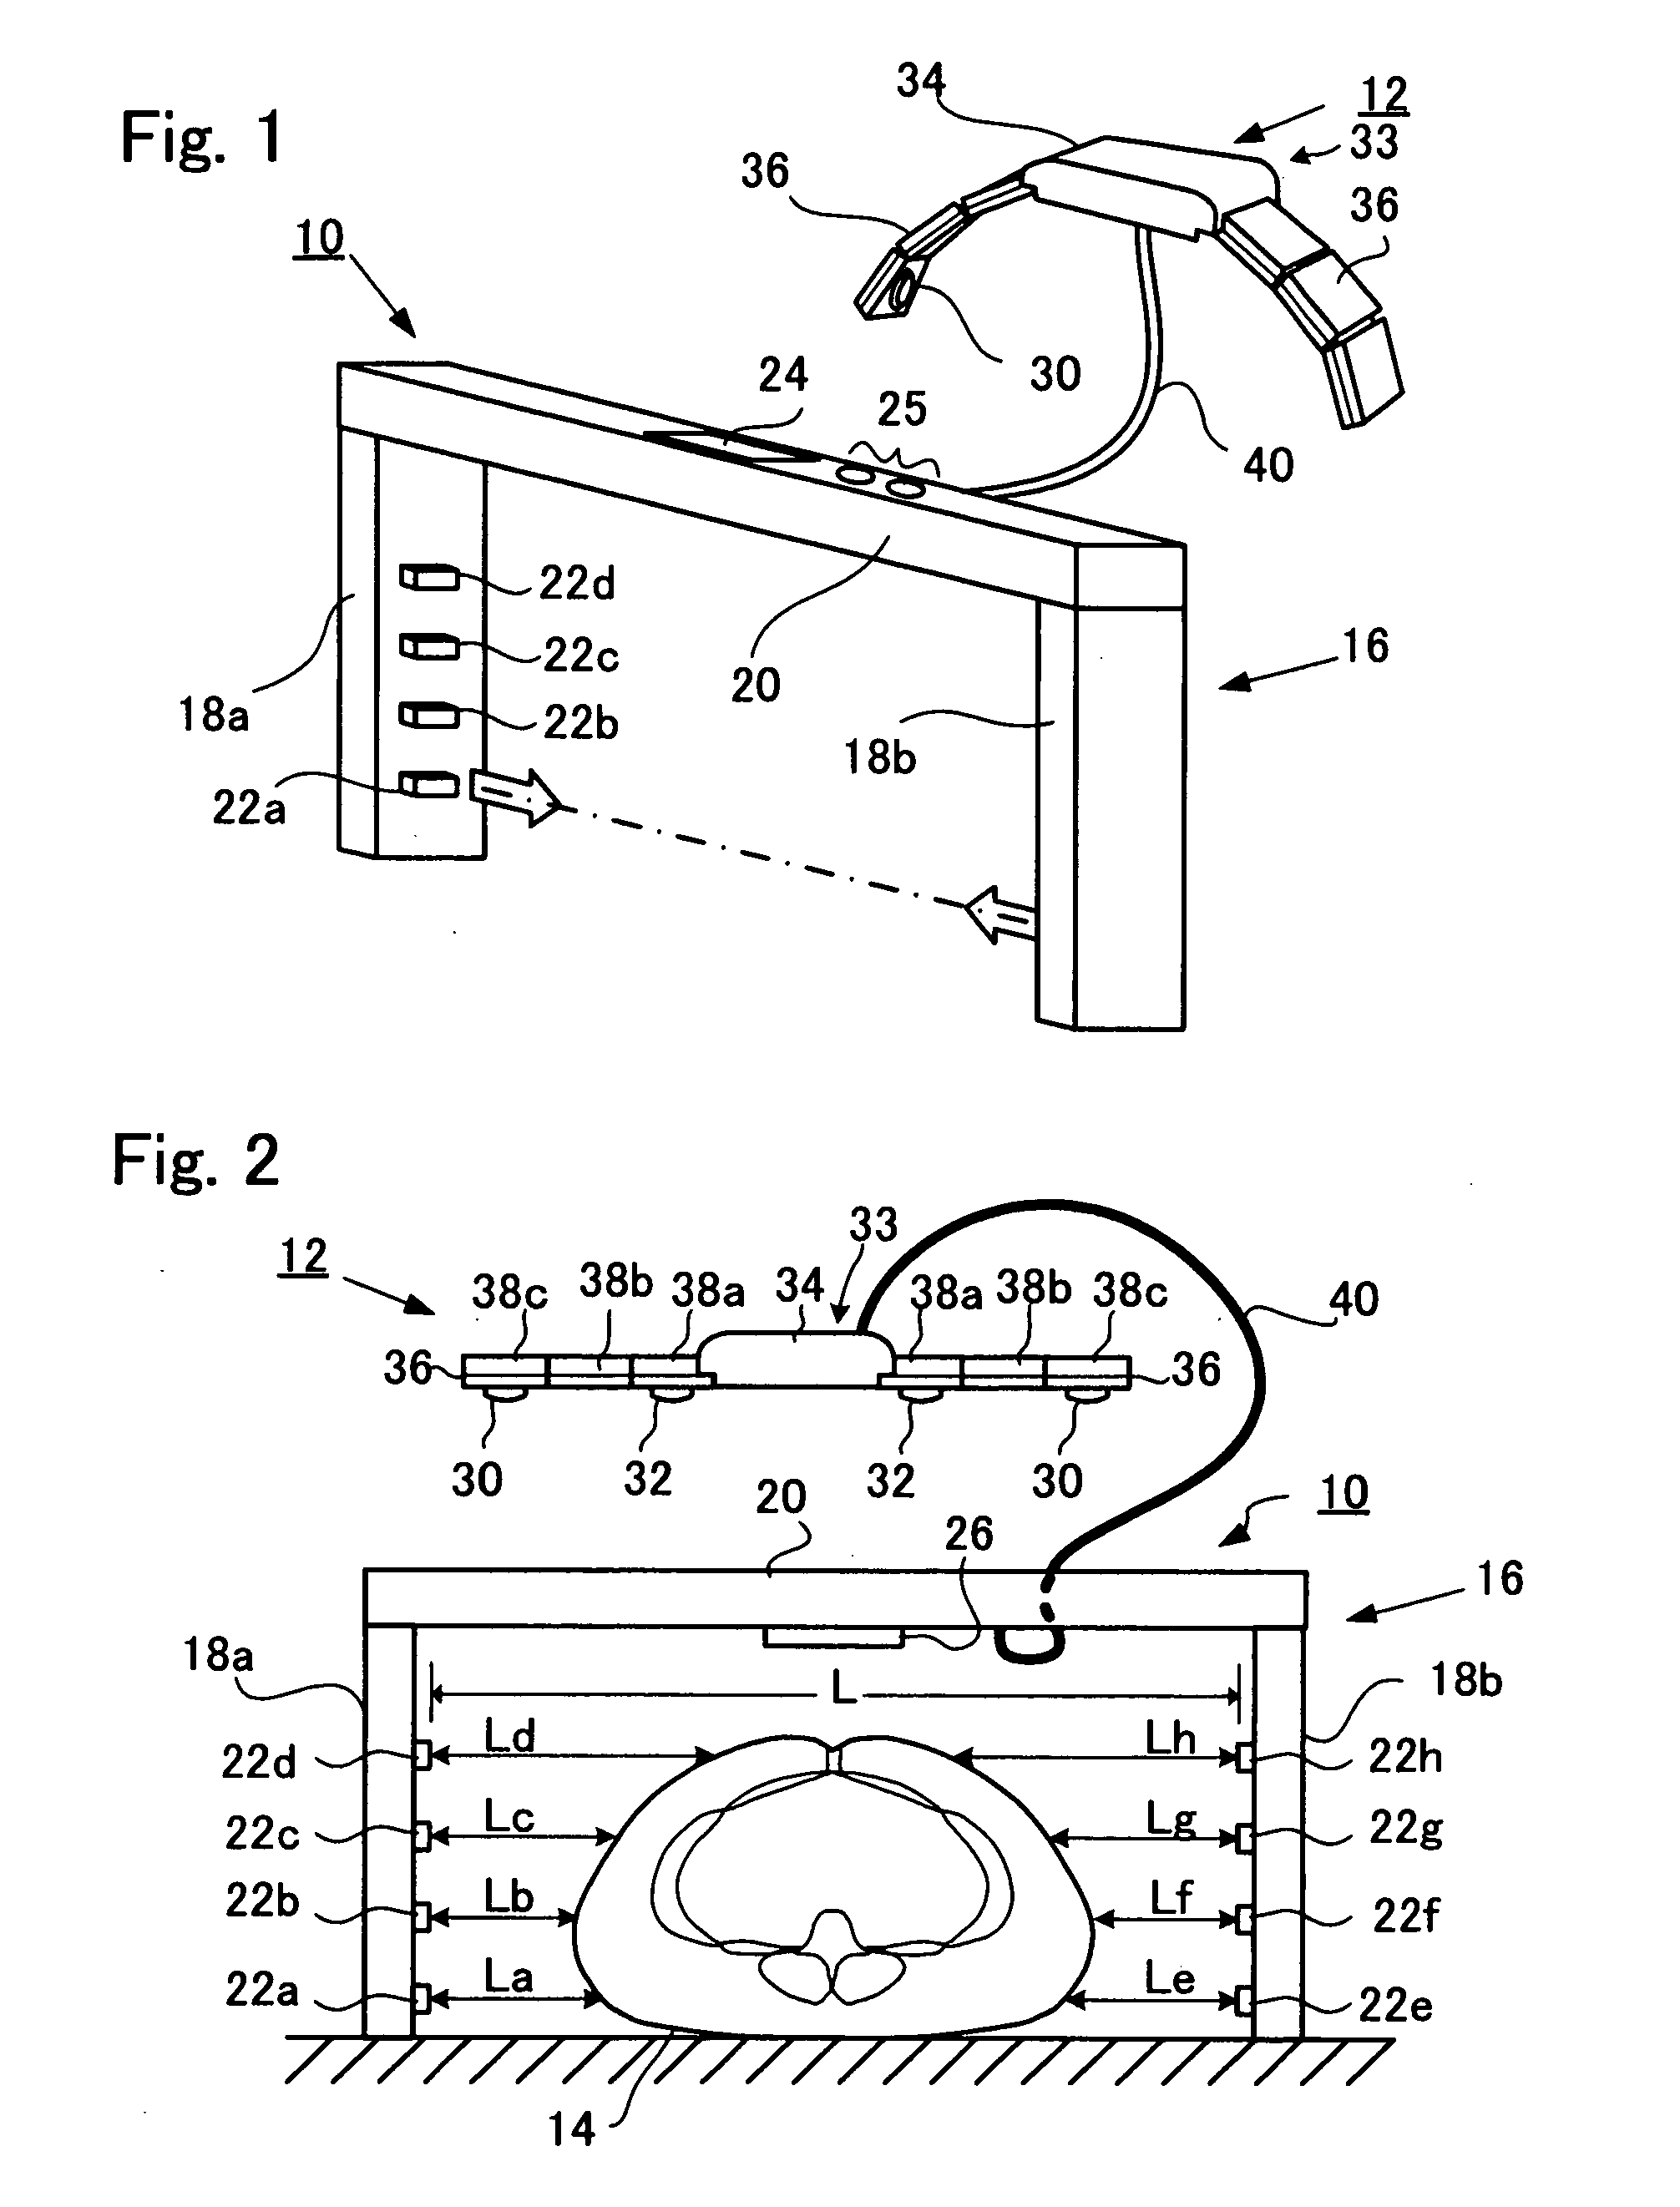 Abdominal impedance measurement apparatus